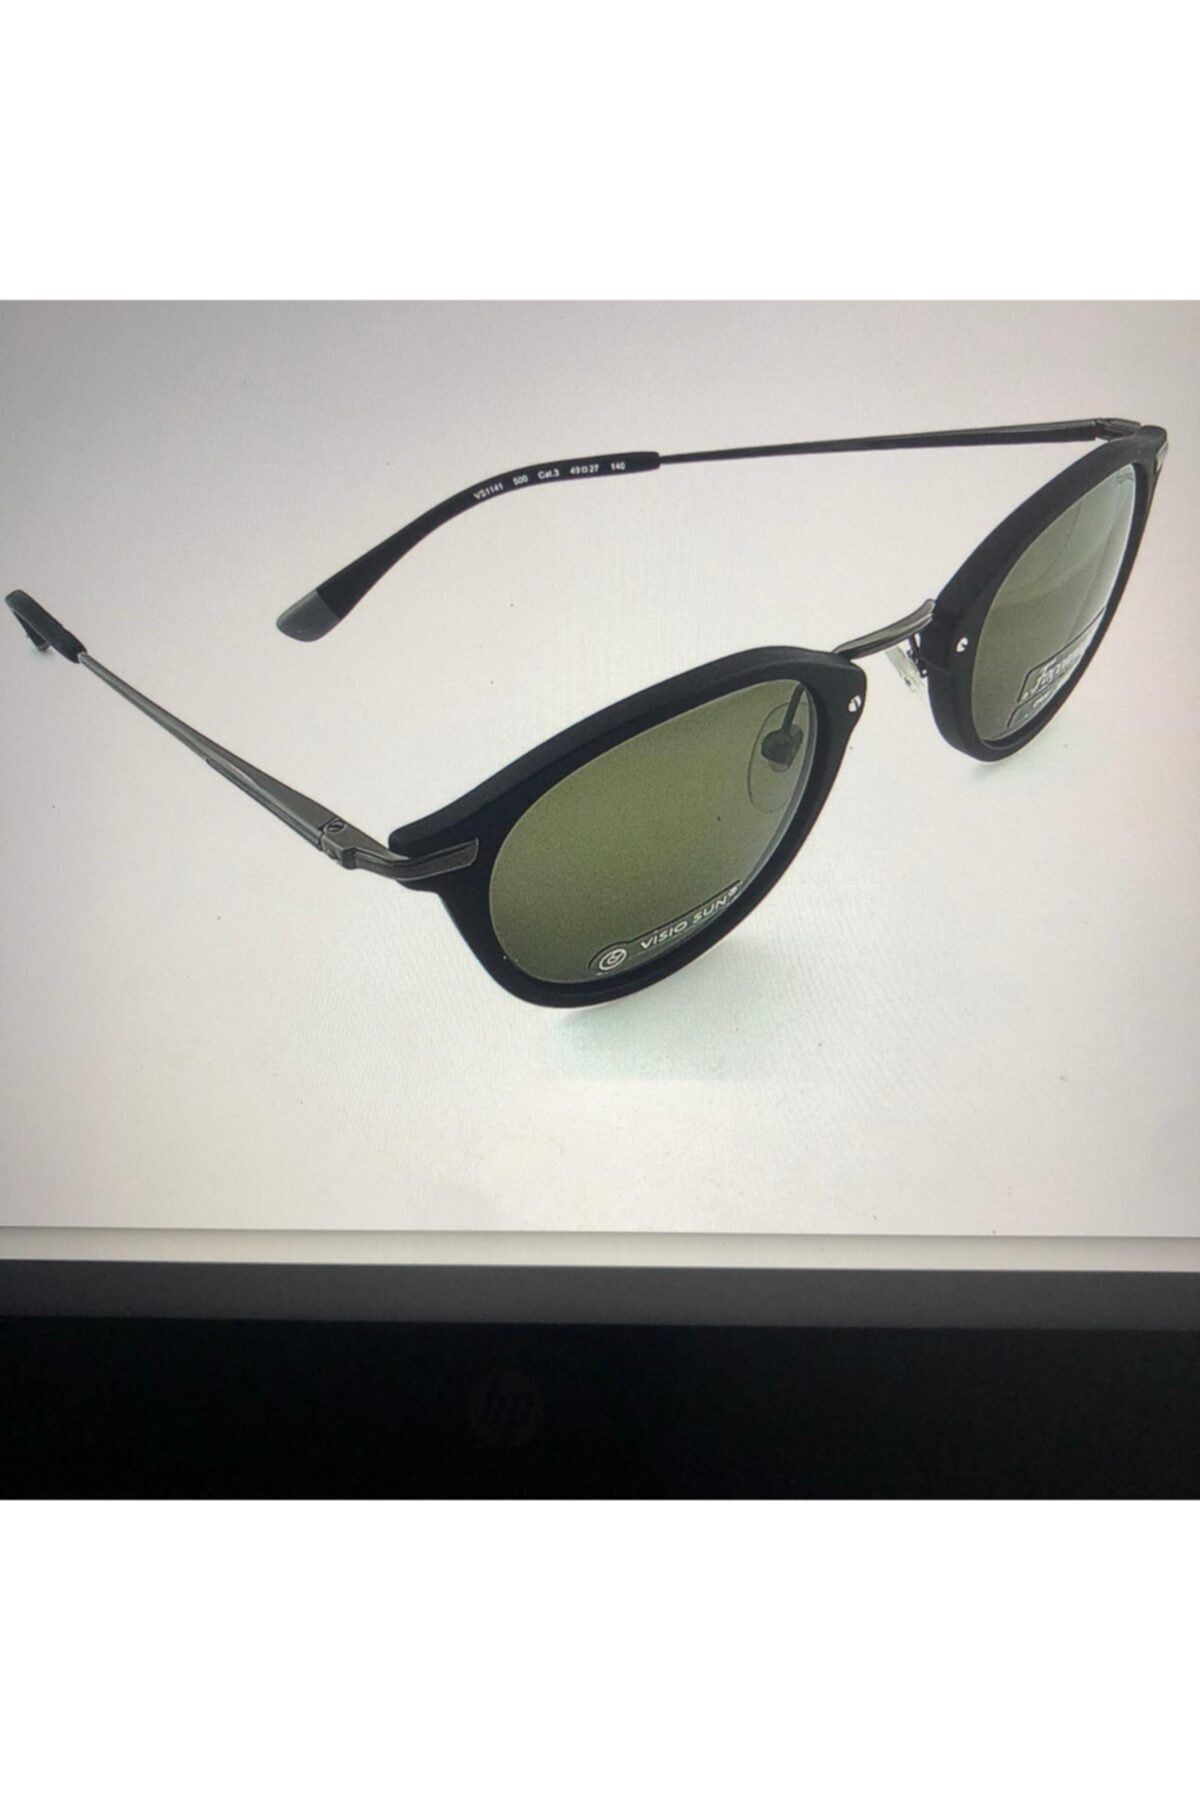 Façonnable Sunglasses Vs1141-500